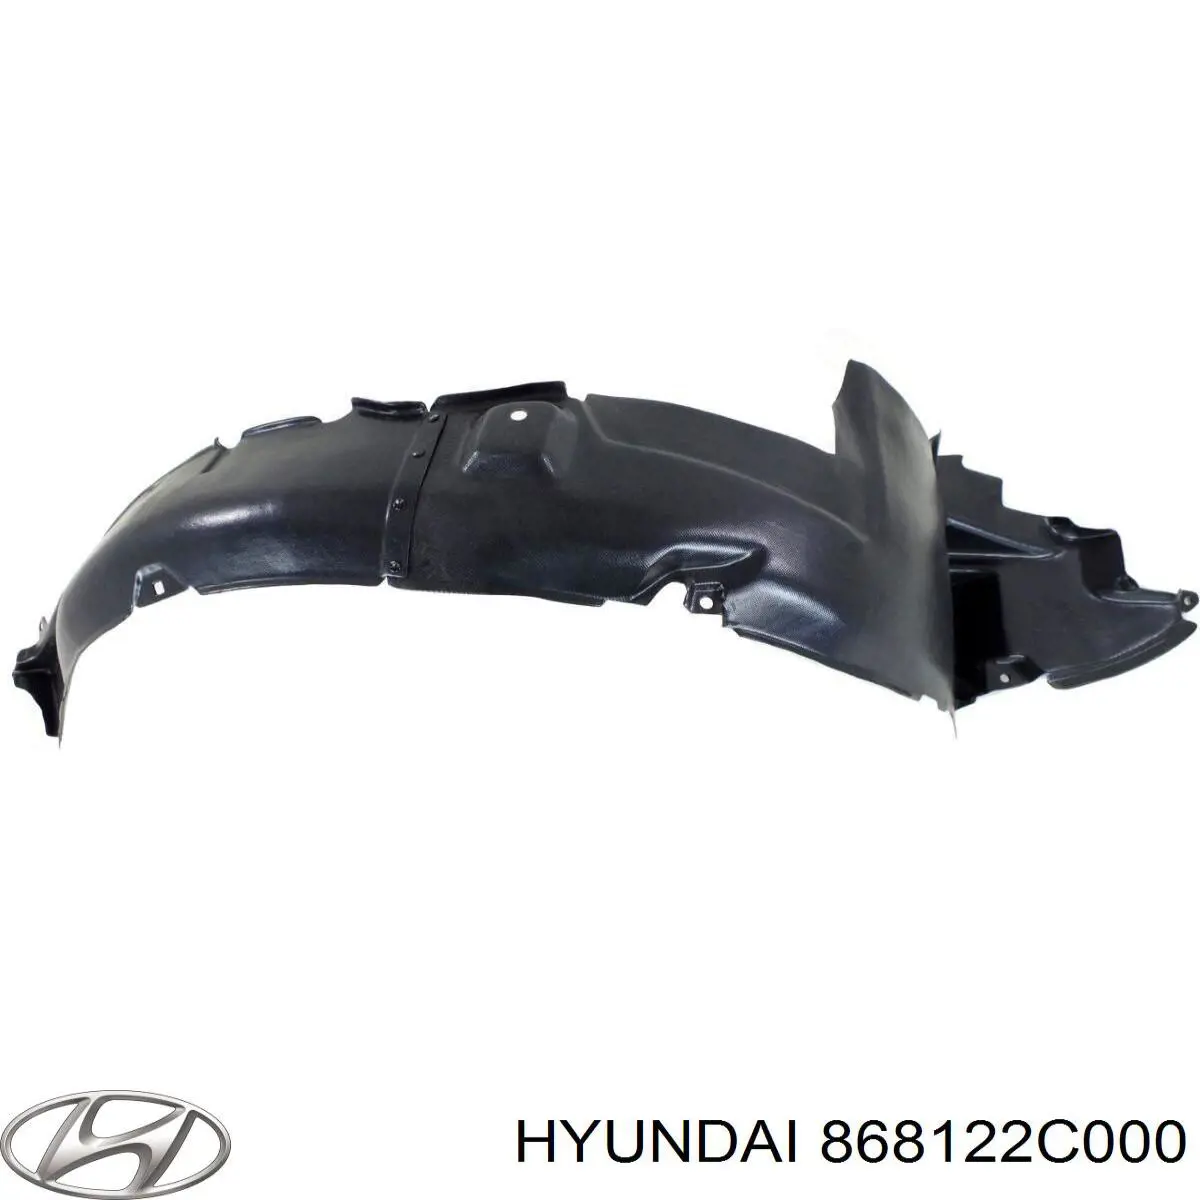 868122C000 Hyundai/Kia guardabarros interior, aleta delantera, derecho